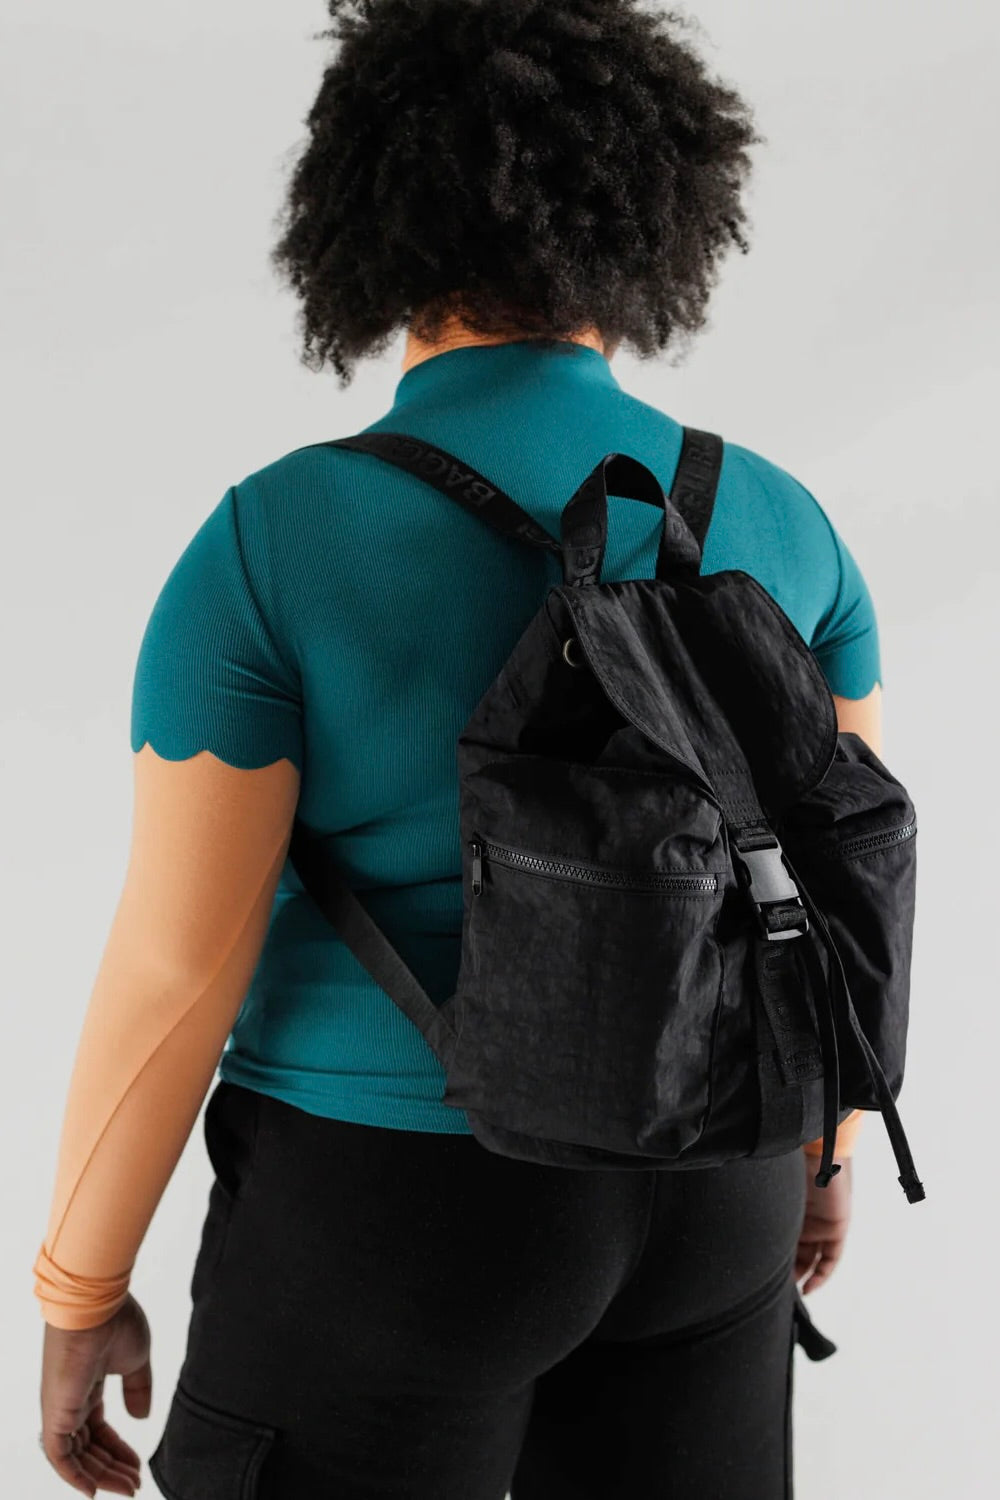 Baggu Sport Backpack / Black